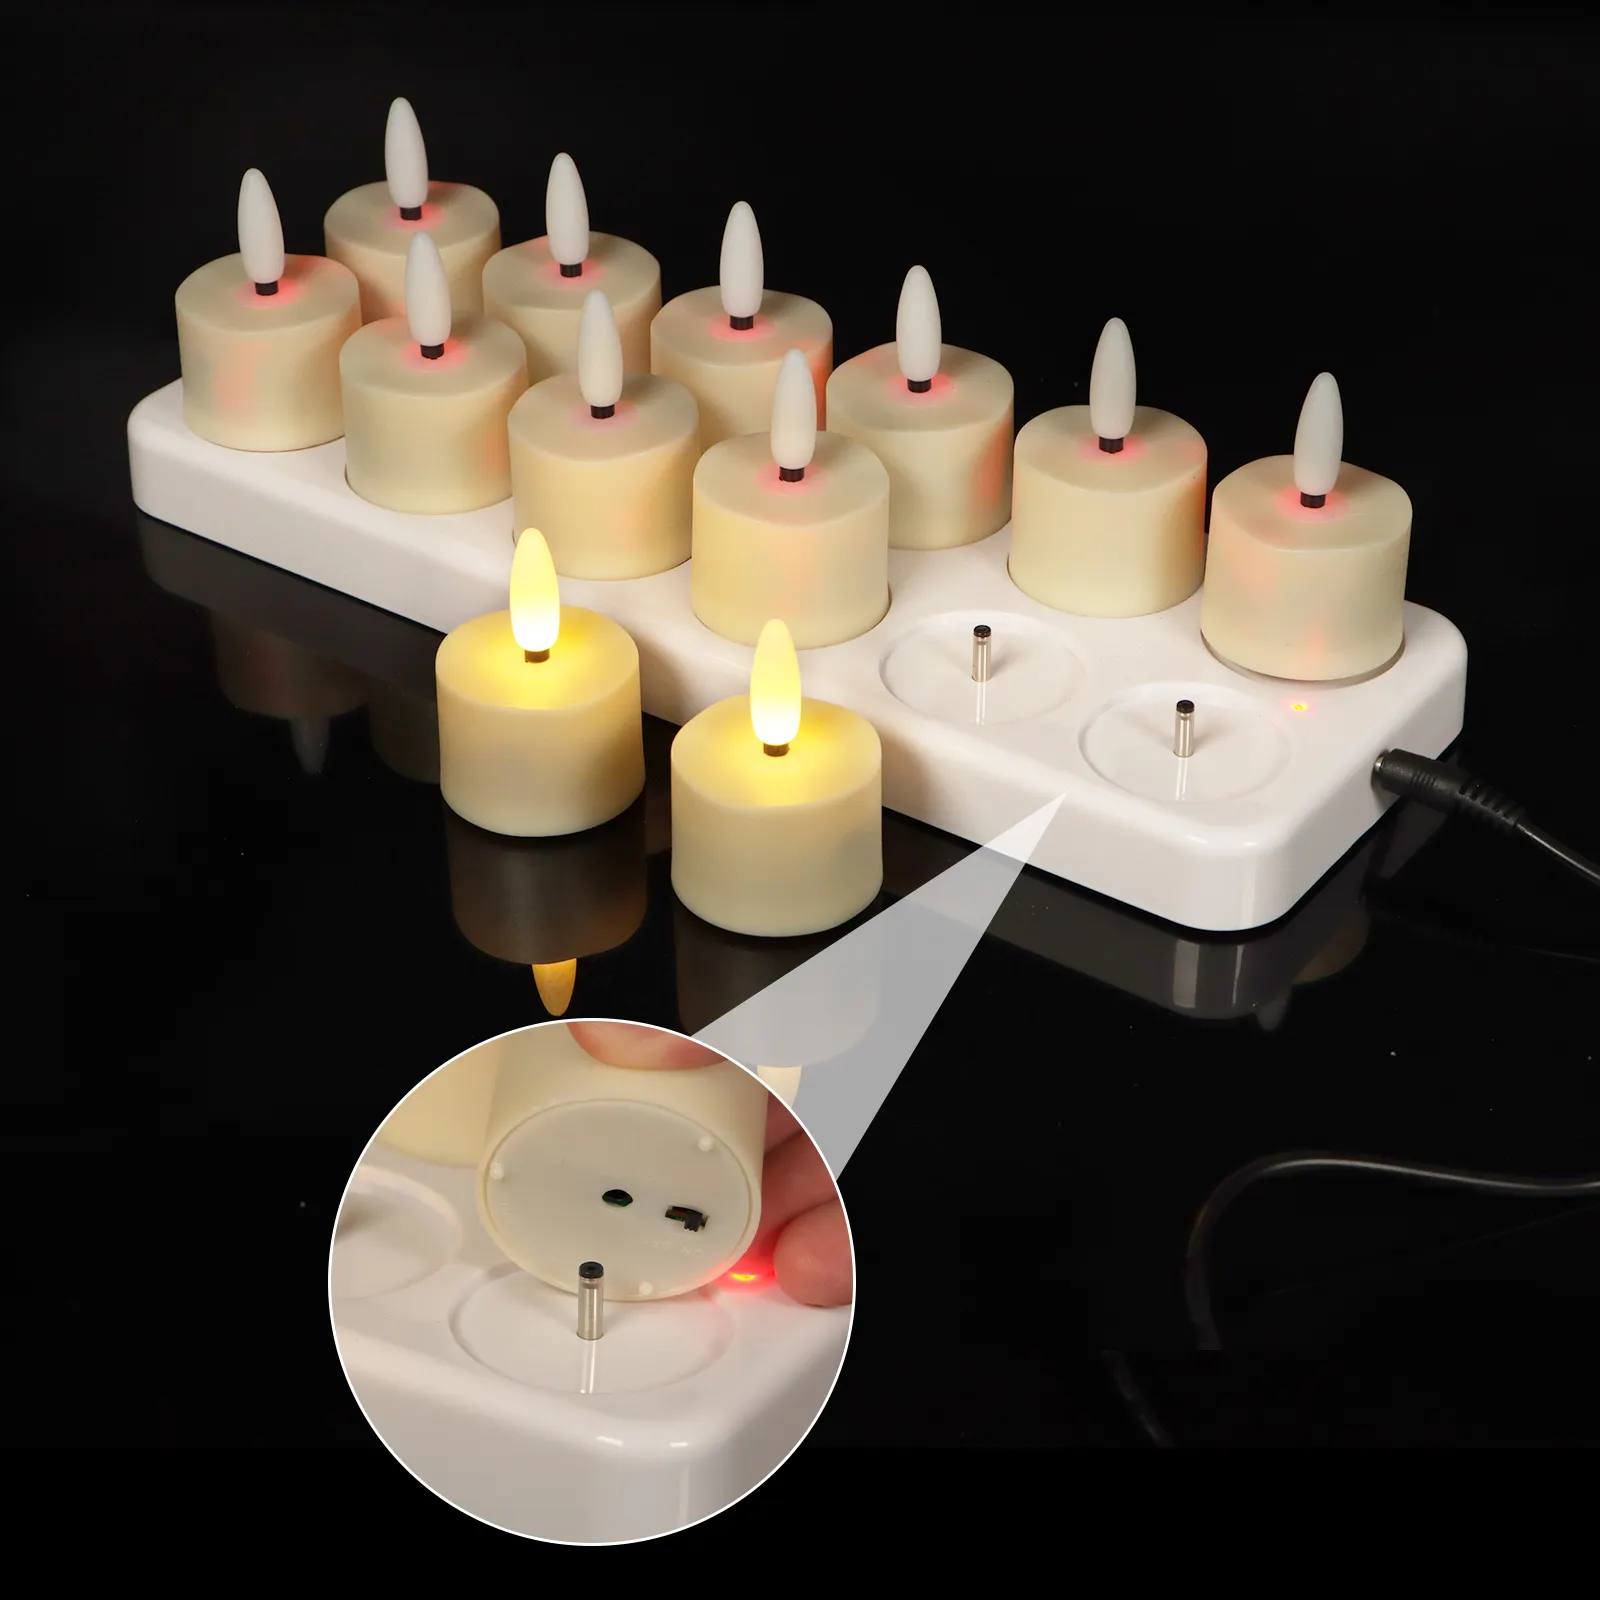 홈 장식 3D 12 팩 실제 불꽃 배터리 작동 Led 촛불 원격 타이머, 불꽃 양초 충전식 배터리